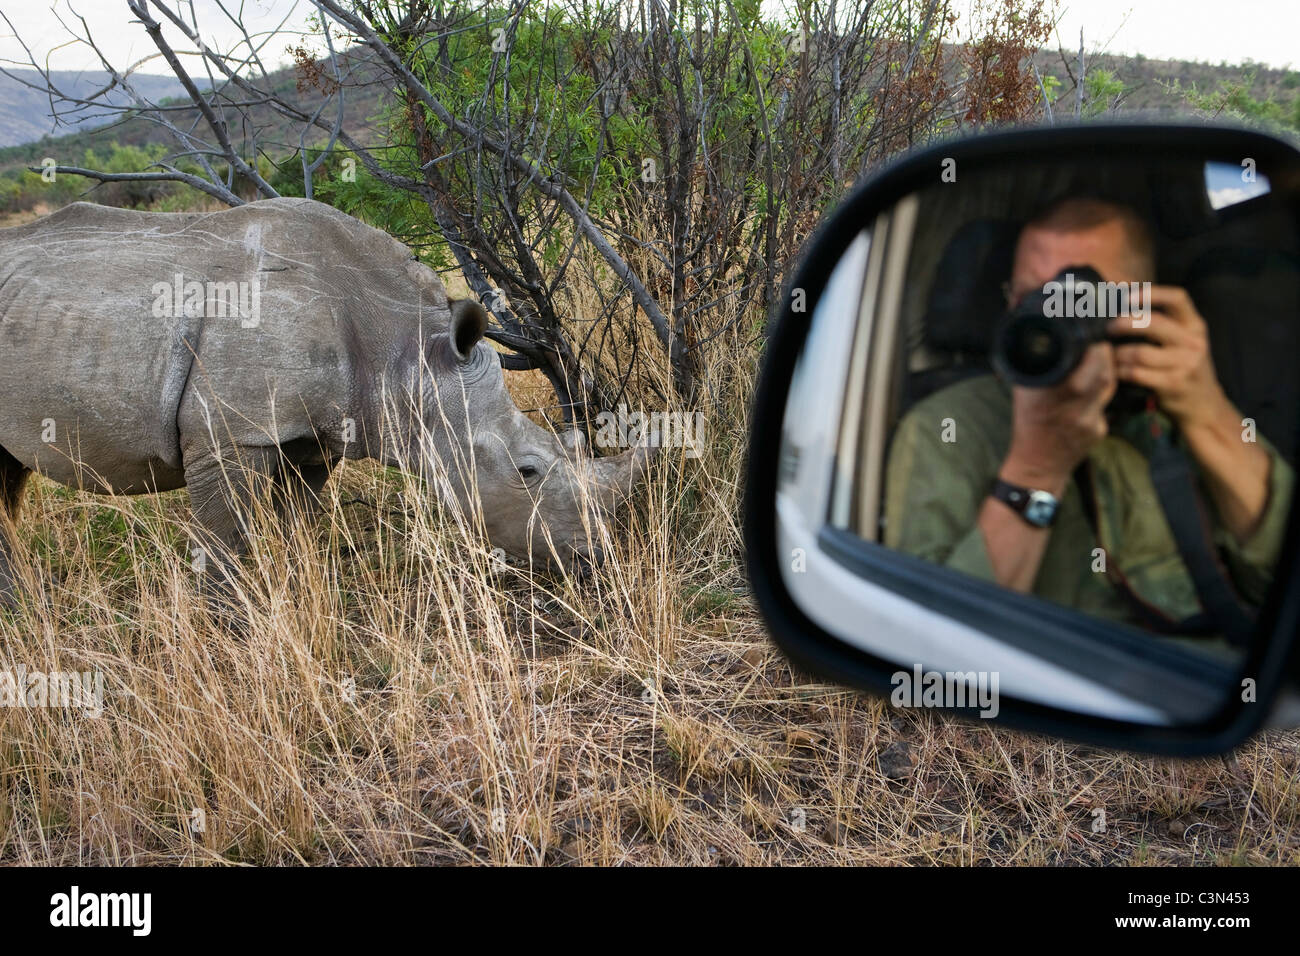 Parco Nazionale di Pilanesberg Tourist, fotografo Frans Lemmens a scattare foto di rinoceronte bianco, Ceratotherium simum, utilizzando specchio dell'auto. Foto Stock